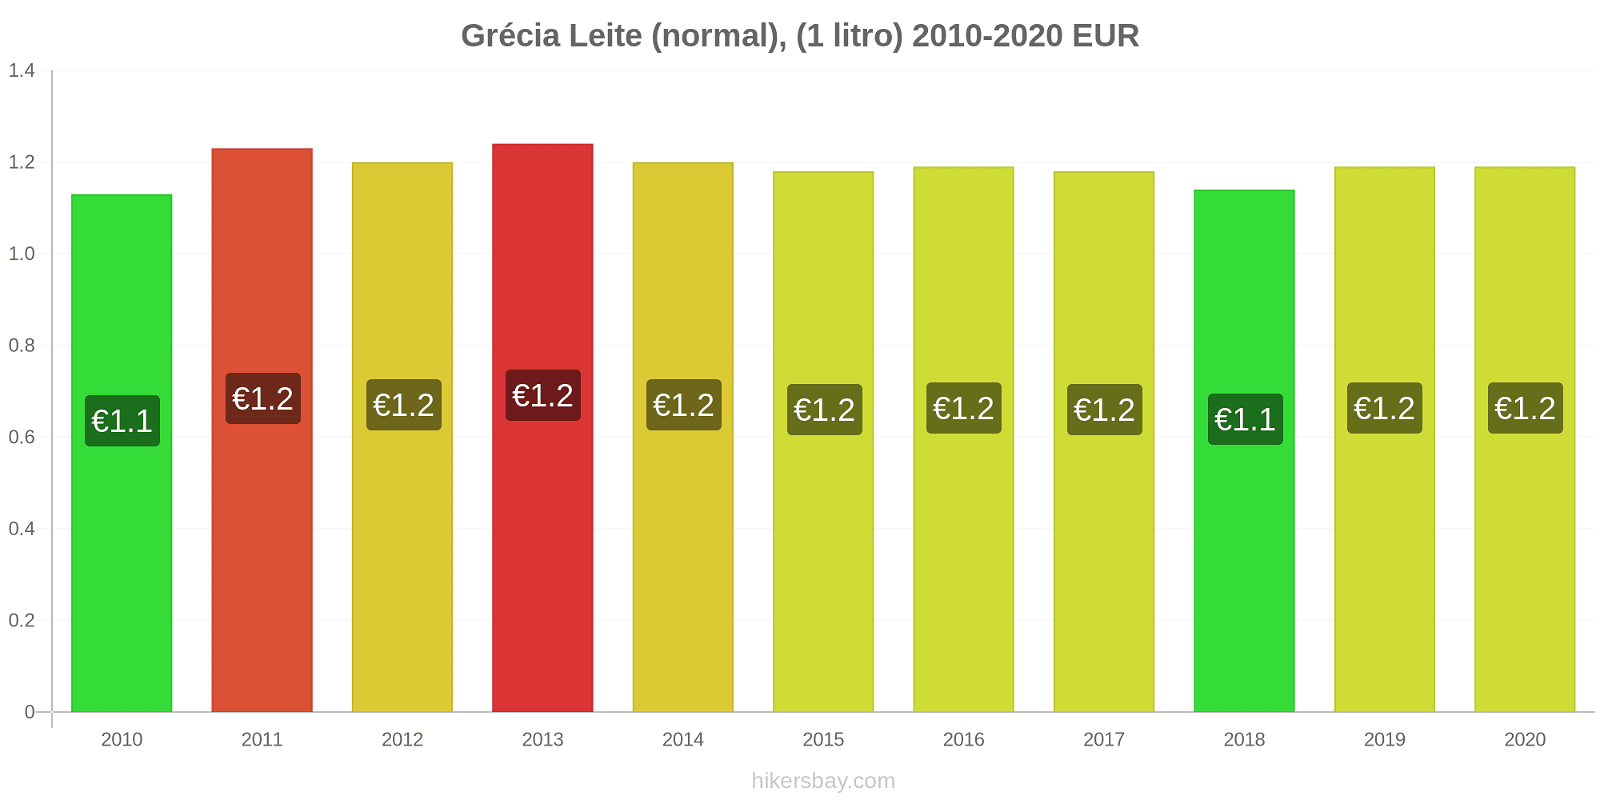 Grécia variação de preço (Regular), leite (1 litro) hikersbay.com